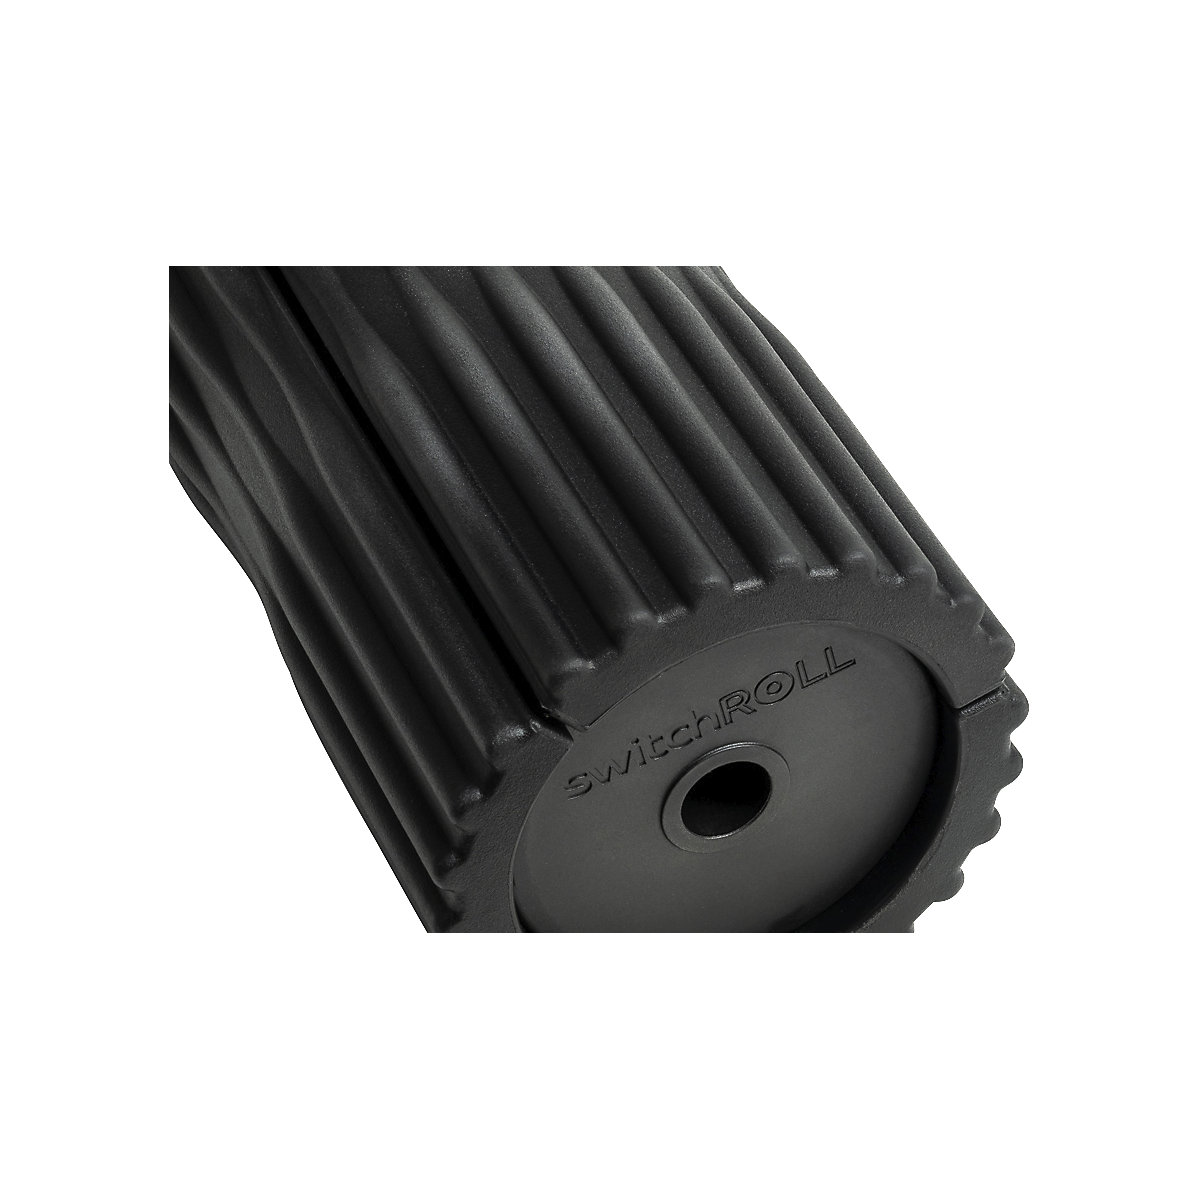 switchROLL s brazdama – meychair ergonomics, dužina 295 mm, u crnoj boji-3